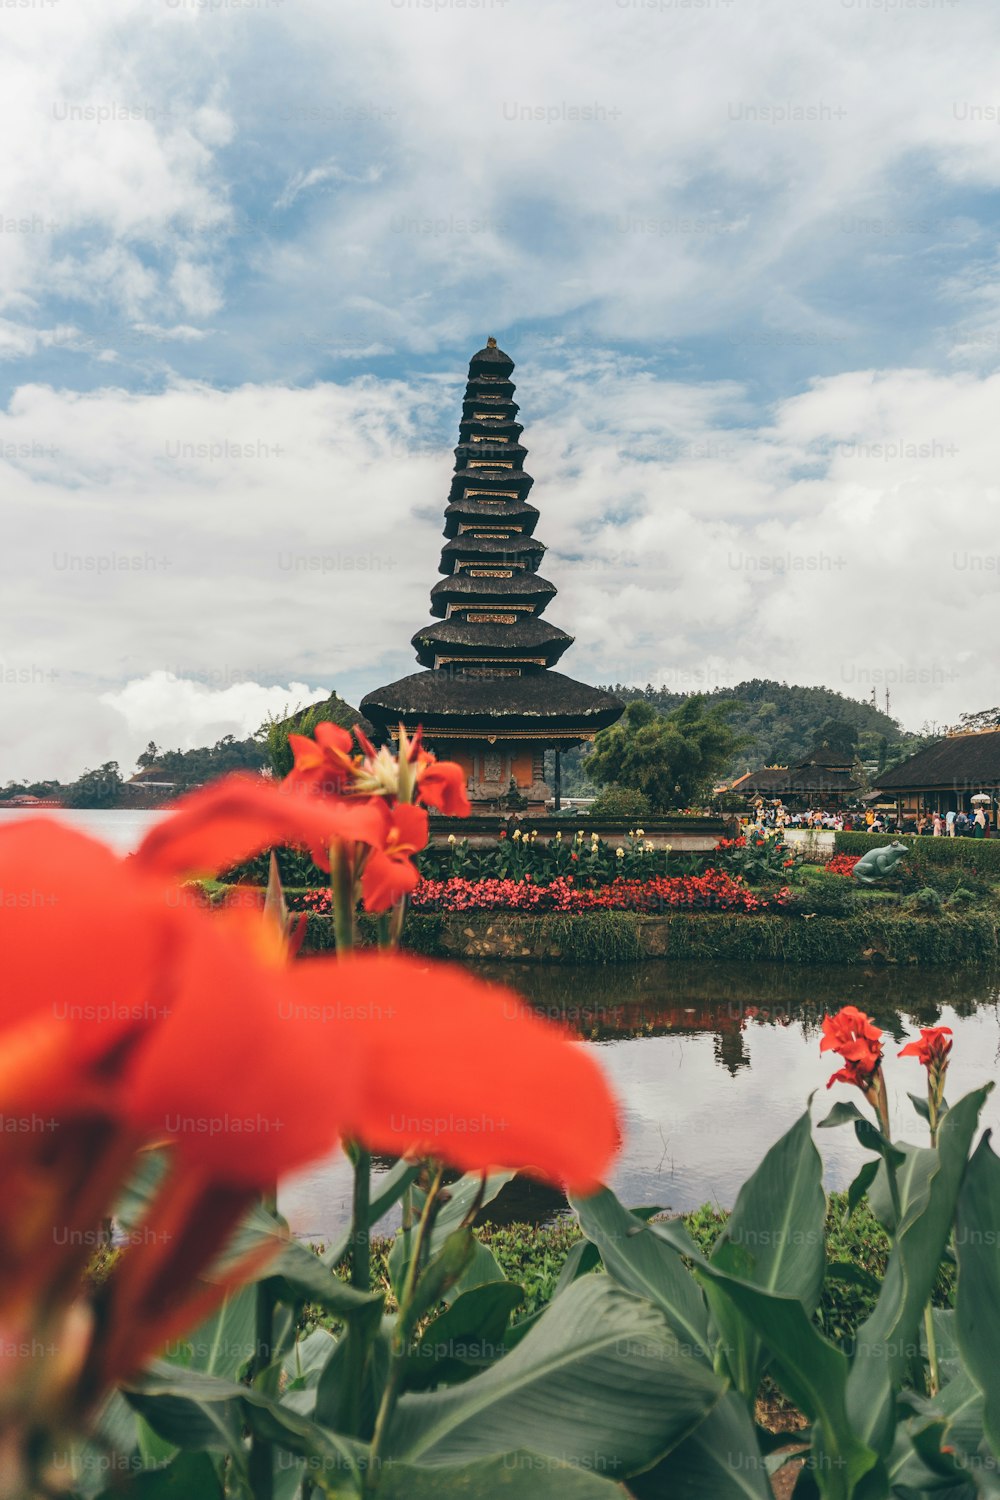 flores vermelhas na frente de um pagode em um parque